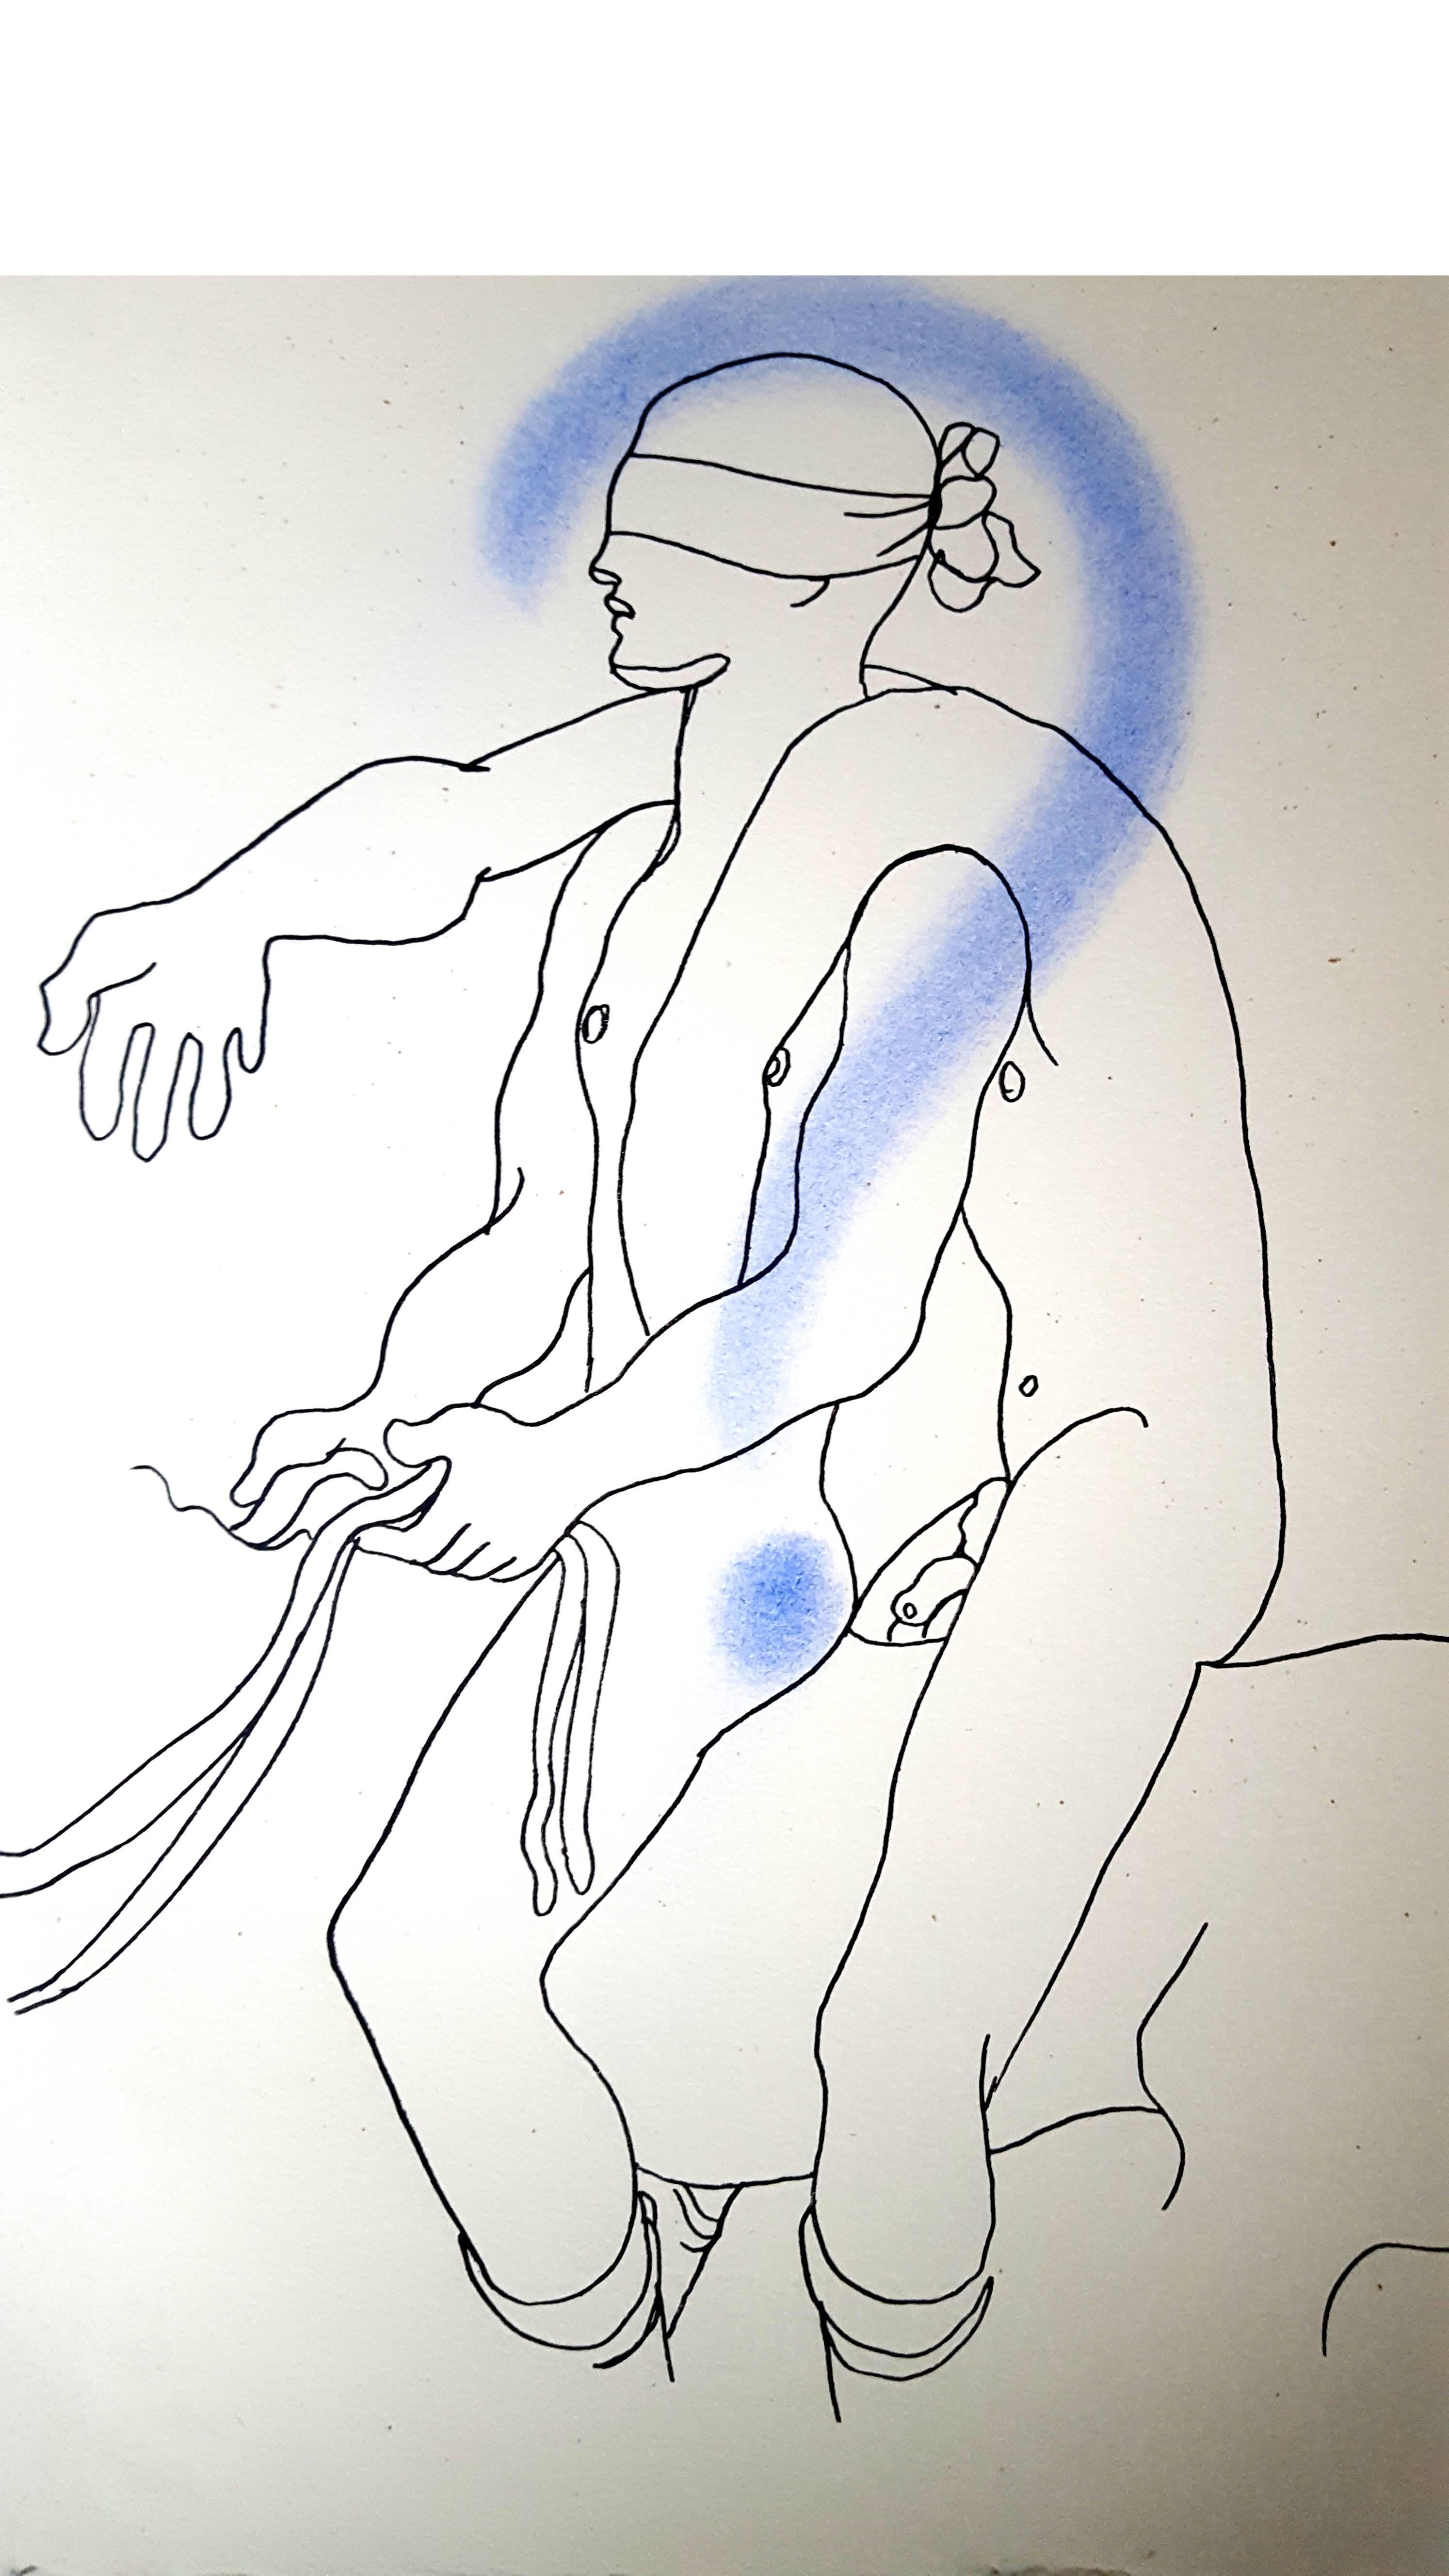 Jean Cocteau
Livre blanc - Autobiographie sur la découverte par Cocteau de son homosexualité. Le livre a d'abord été publié anonymement et a fait scandale.
Lithographie originale coloriée à la main
Dimensions : 28,4 x 22,8 cm : 28,4 x 22,8